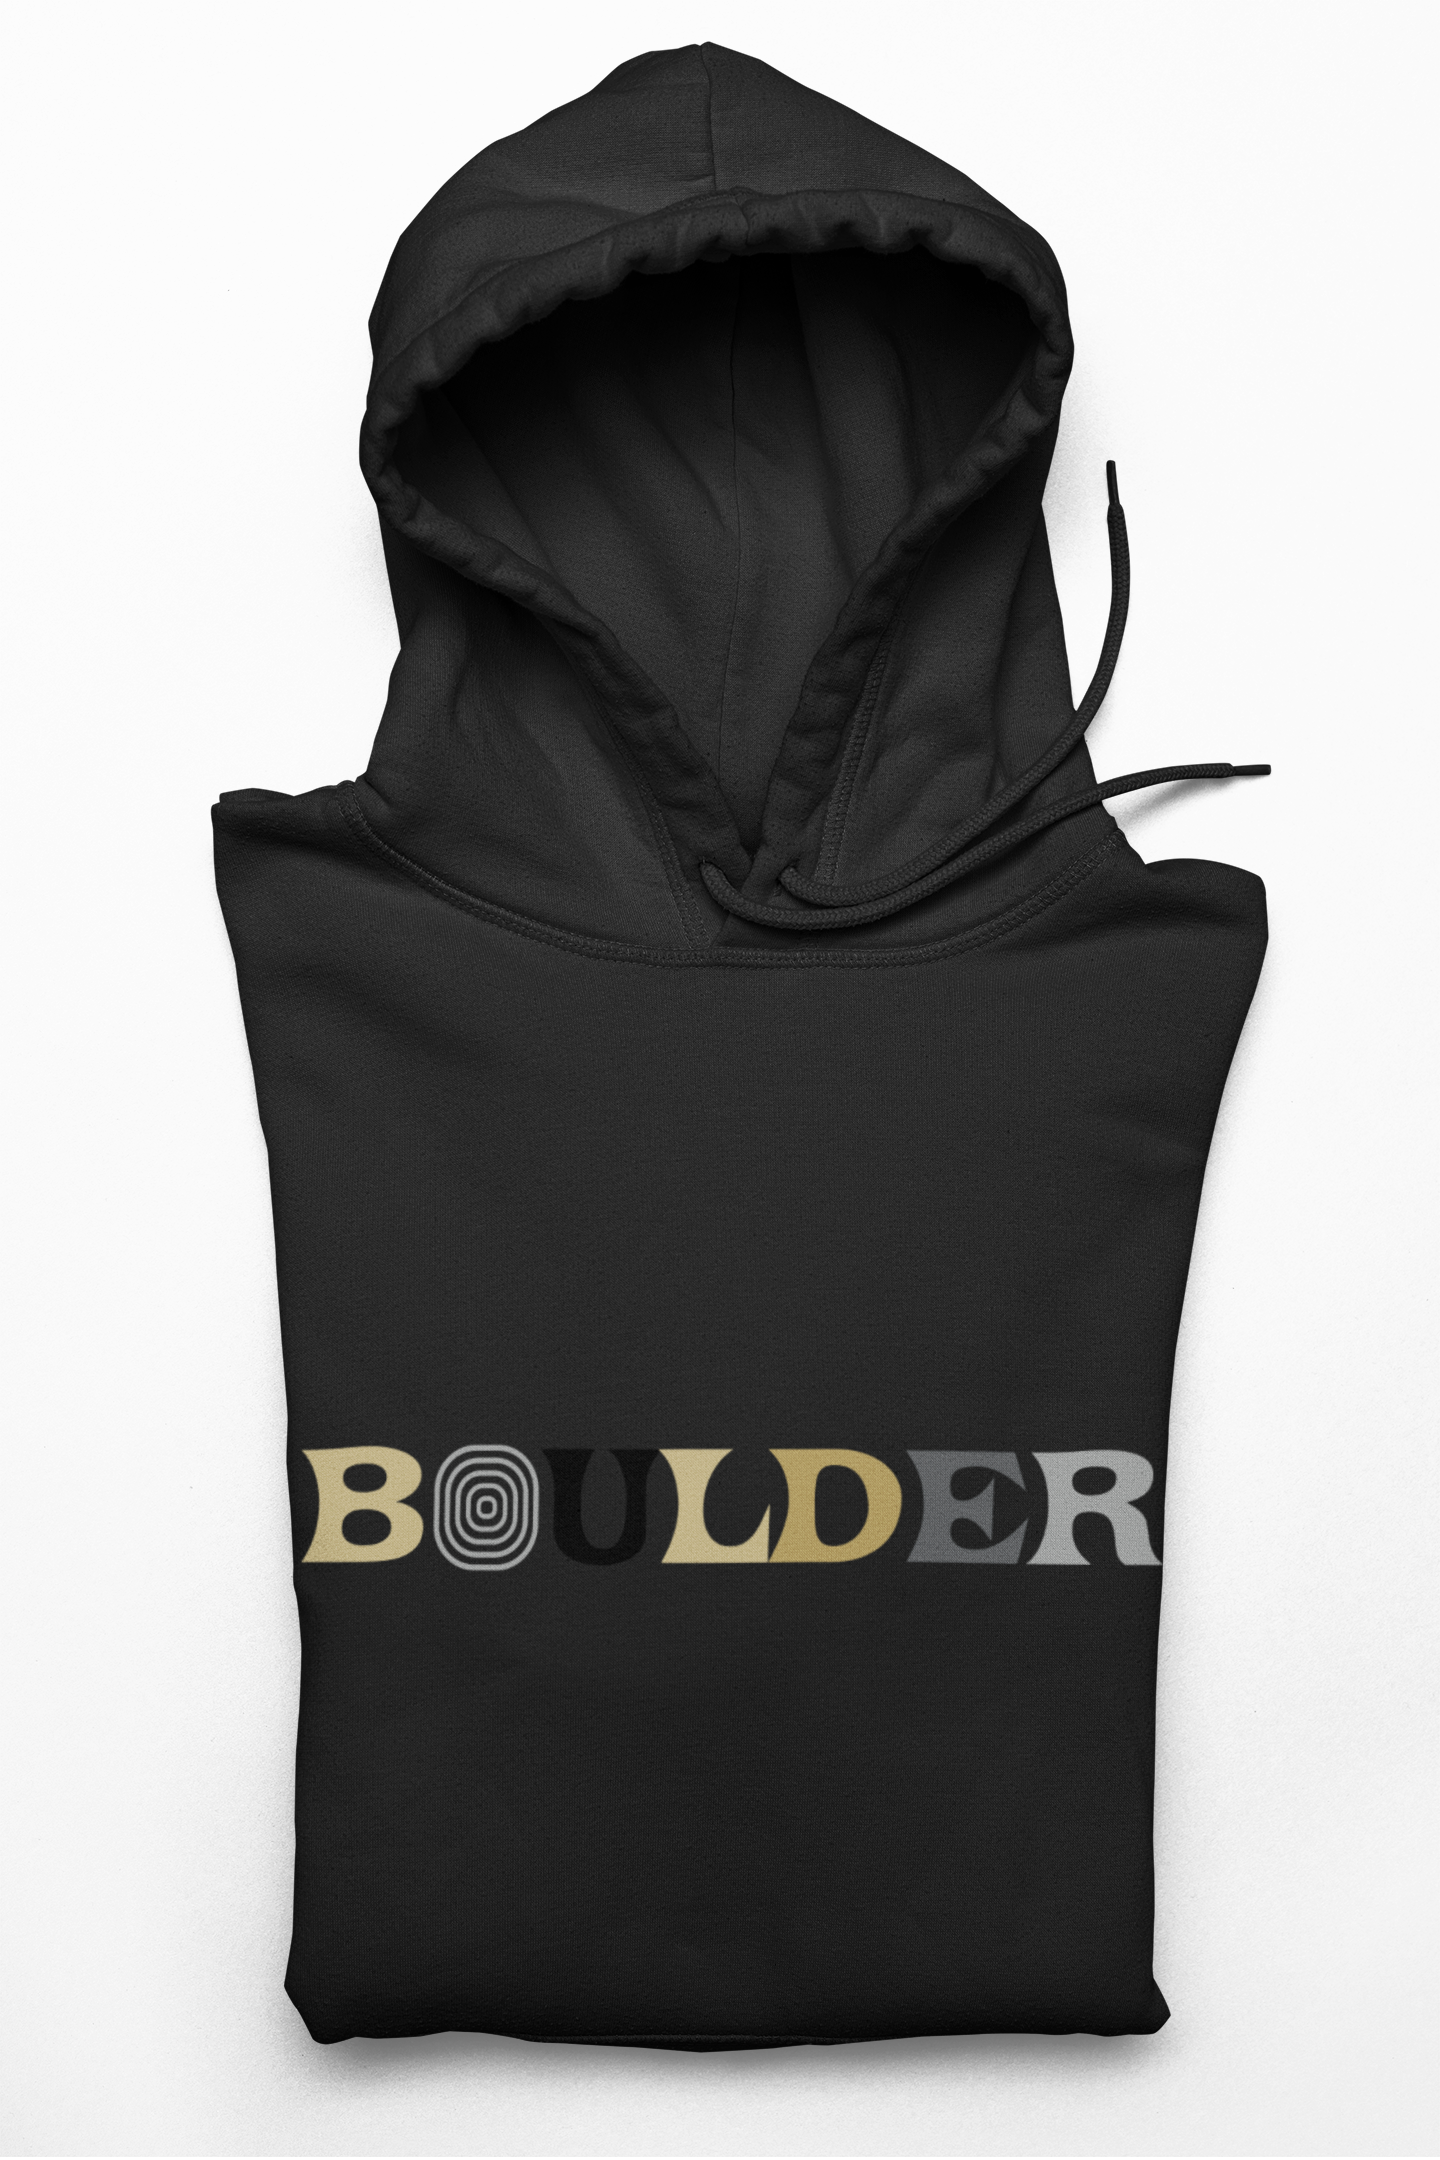 Boulder Heavyweight Hoodie - Black